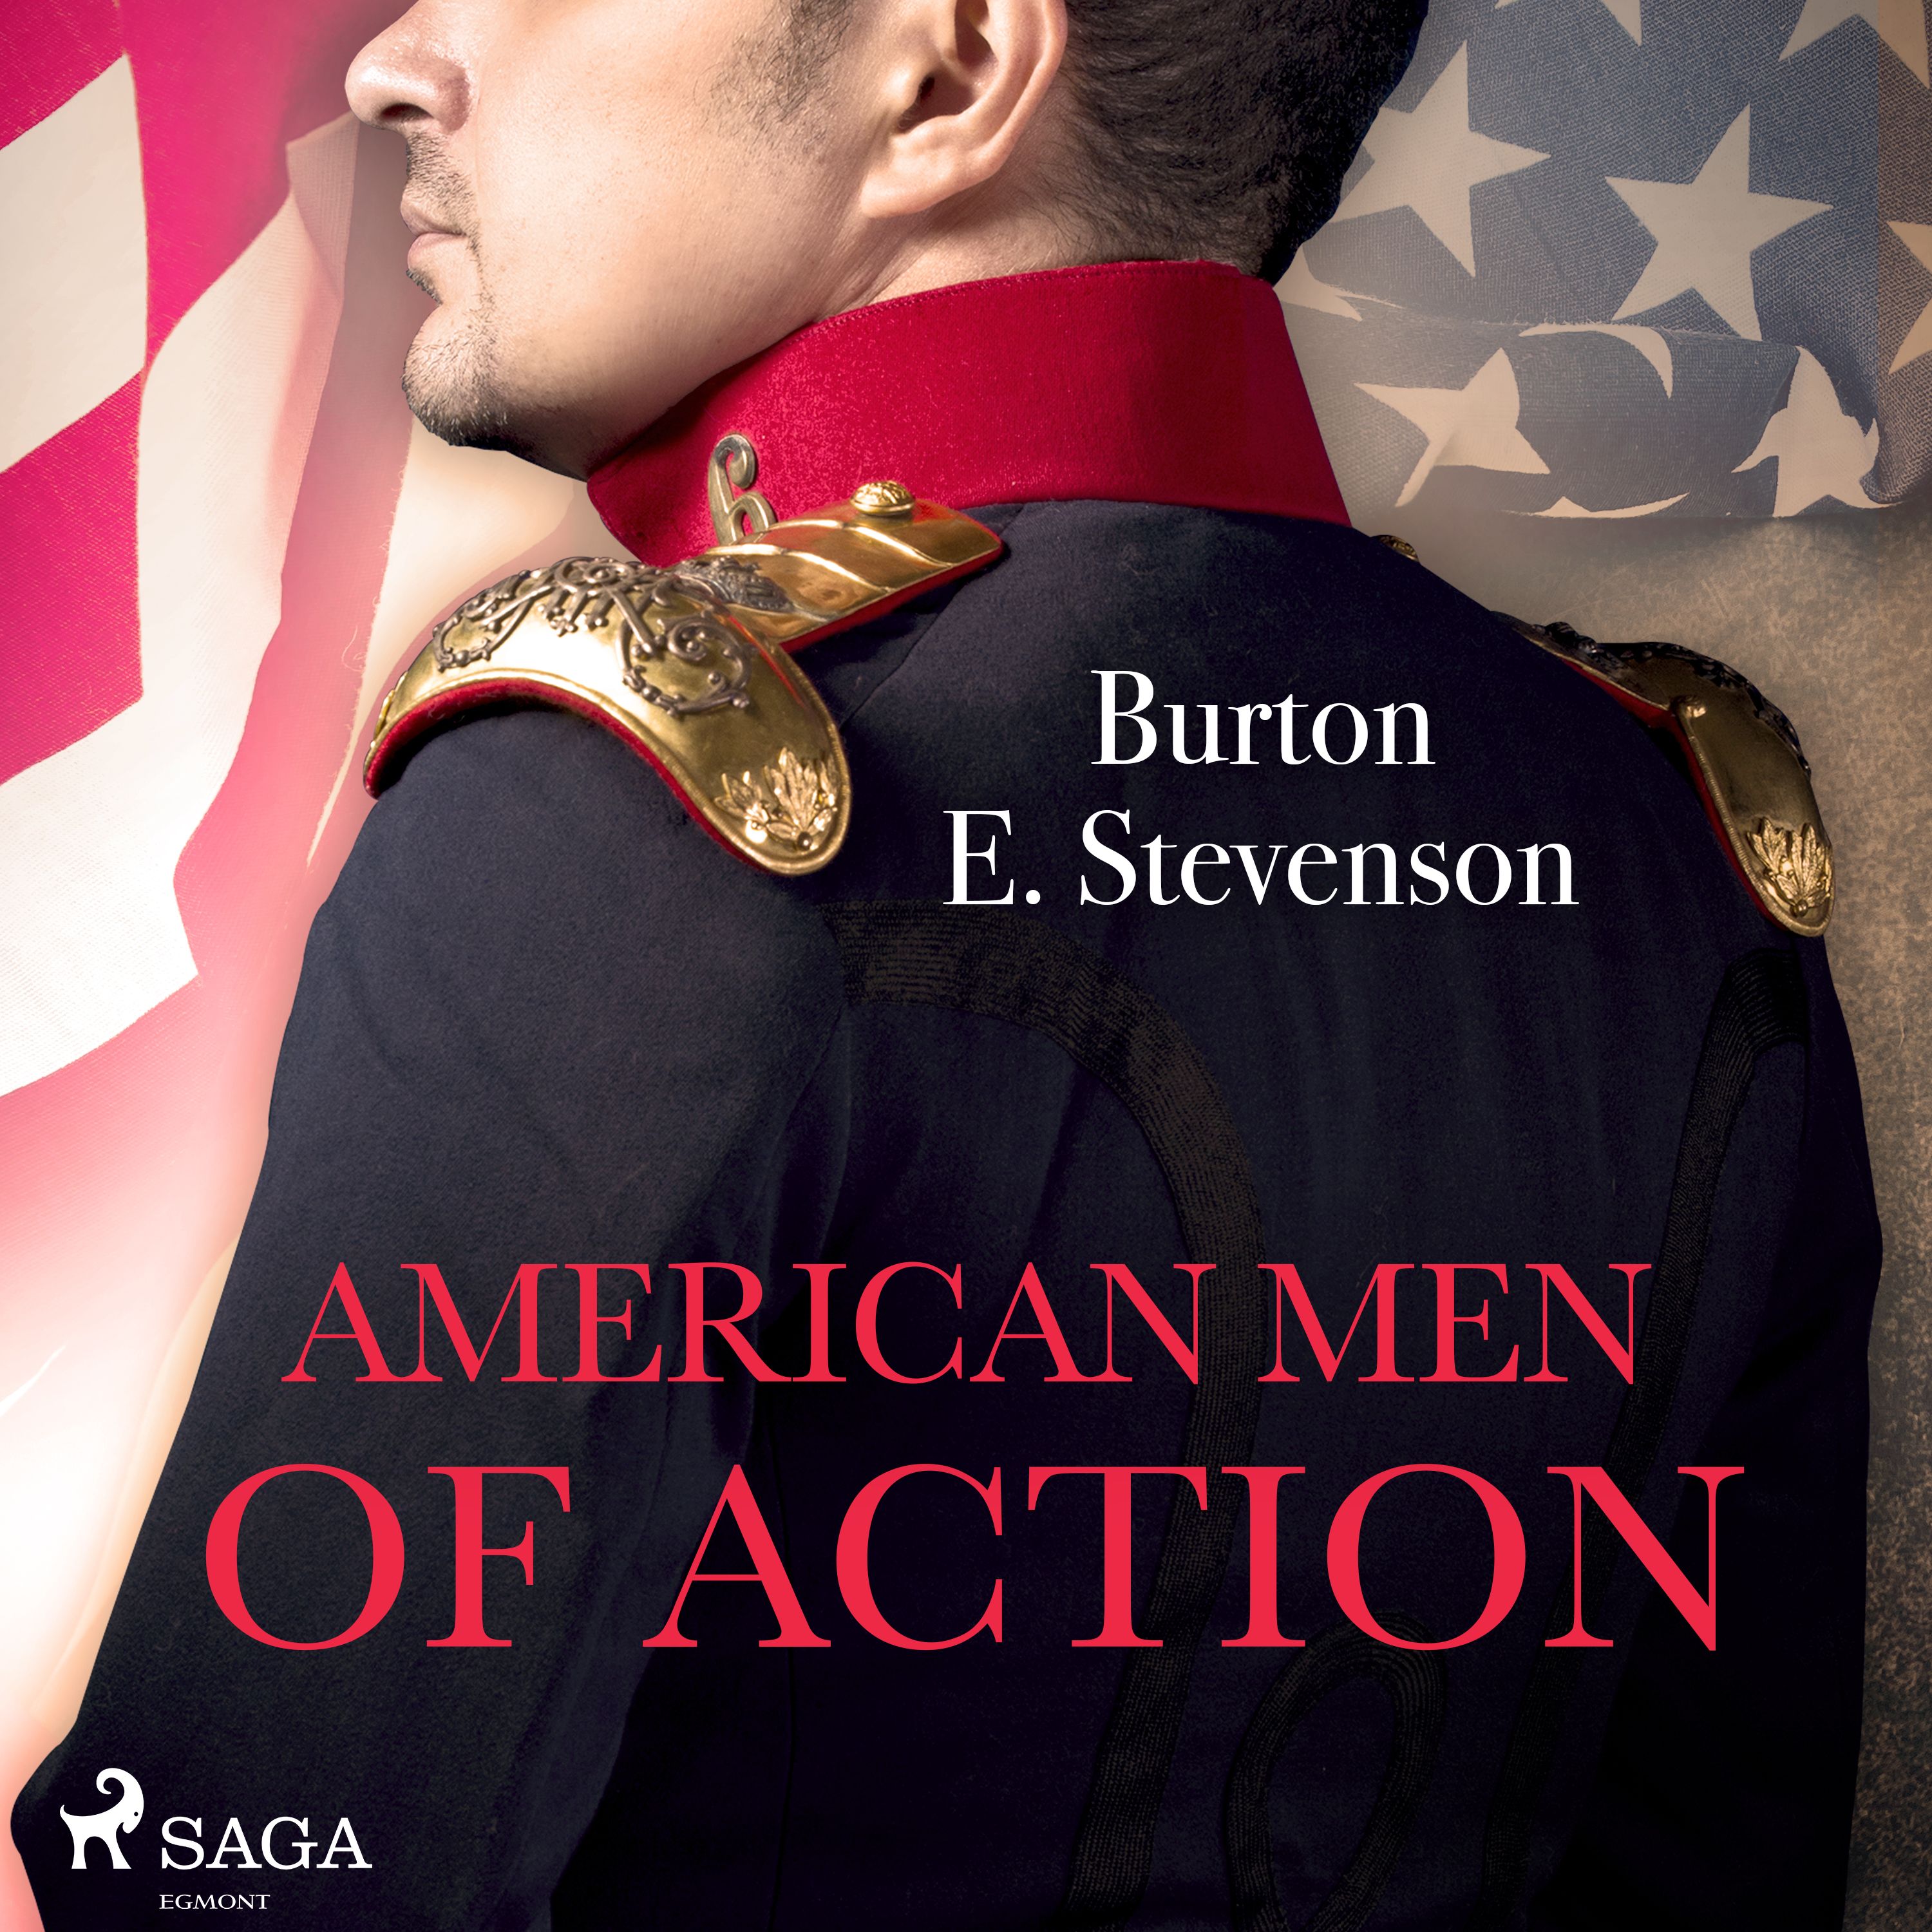 American Men of Action, lydbog af Burton E. Stevenson